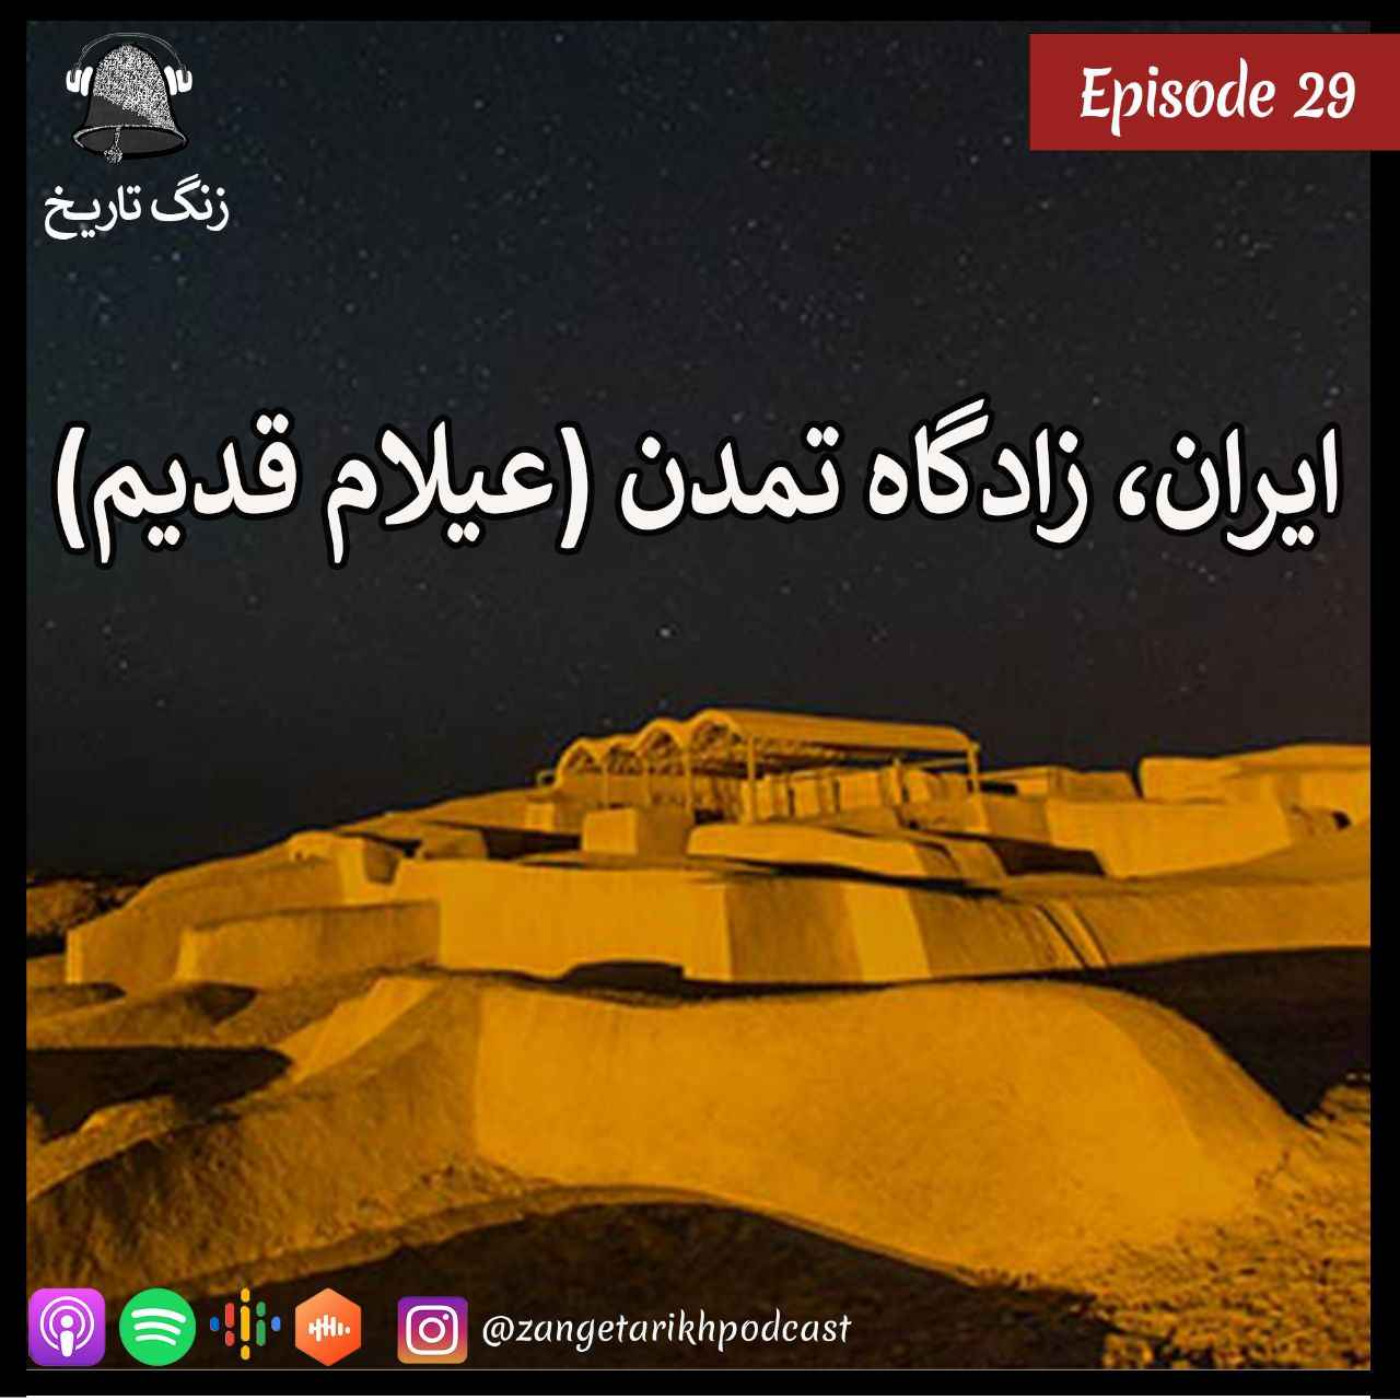 اپیزود 29 ایران, زادگاه تمدن (عیلام قدیم)